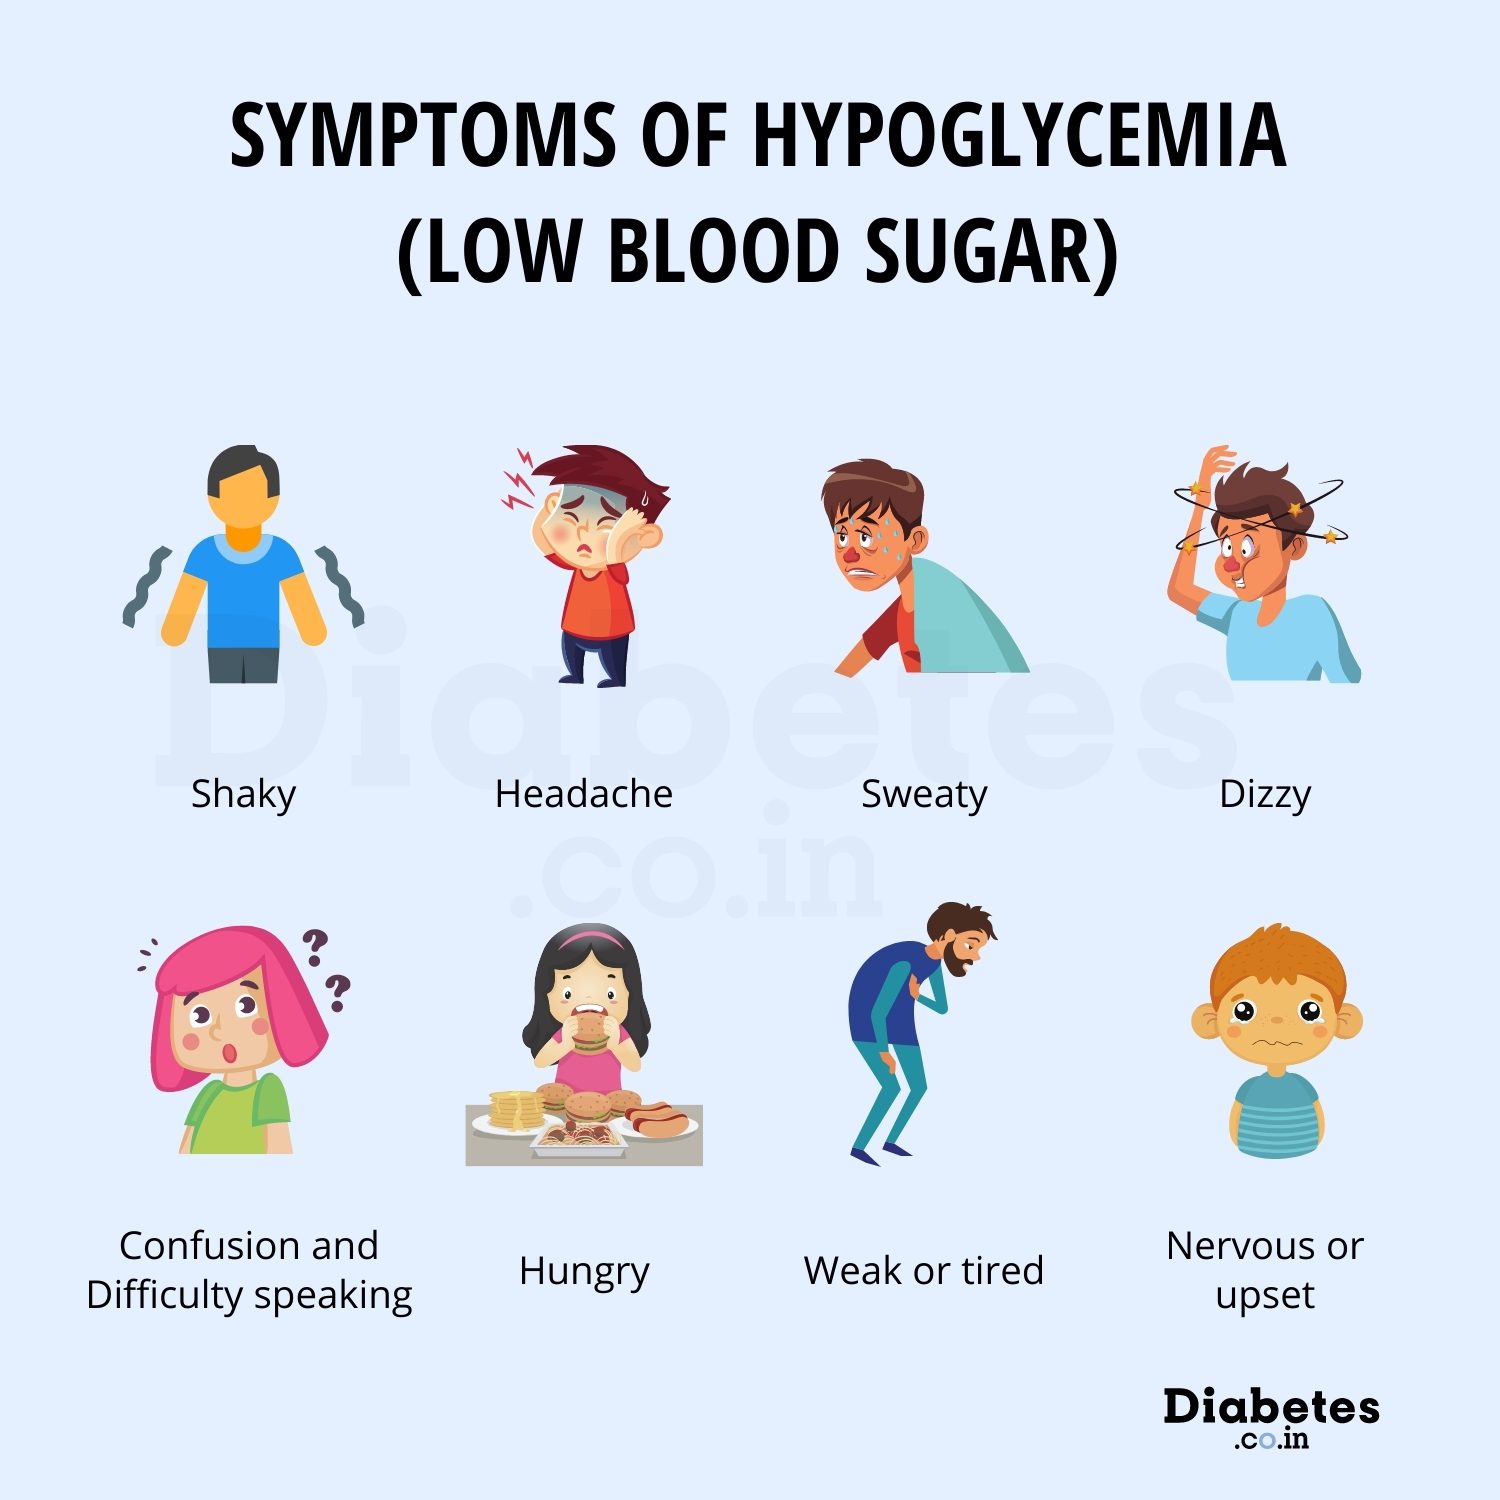 Symptoms of low blood sugar